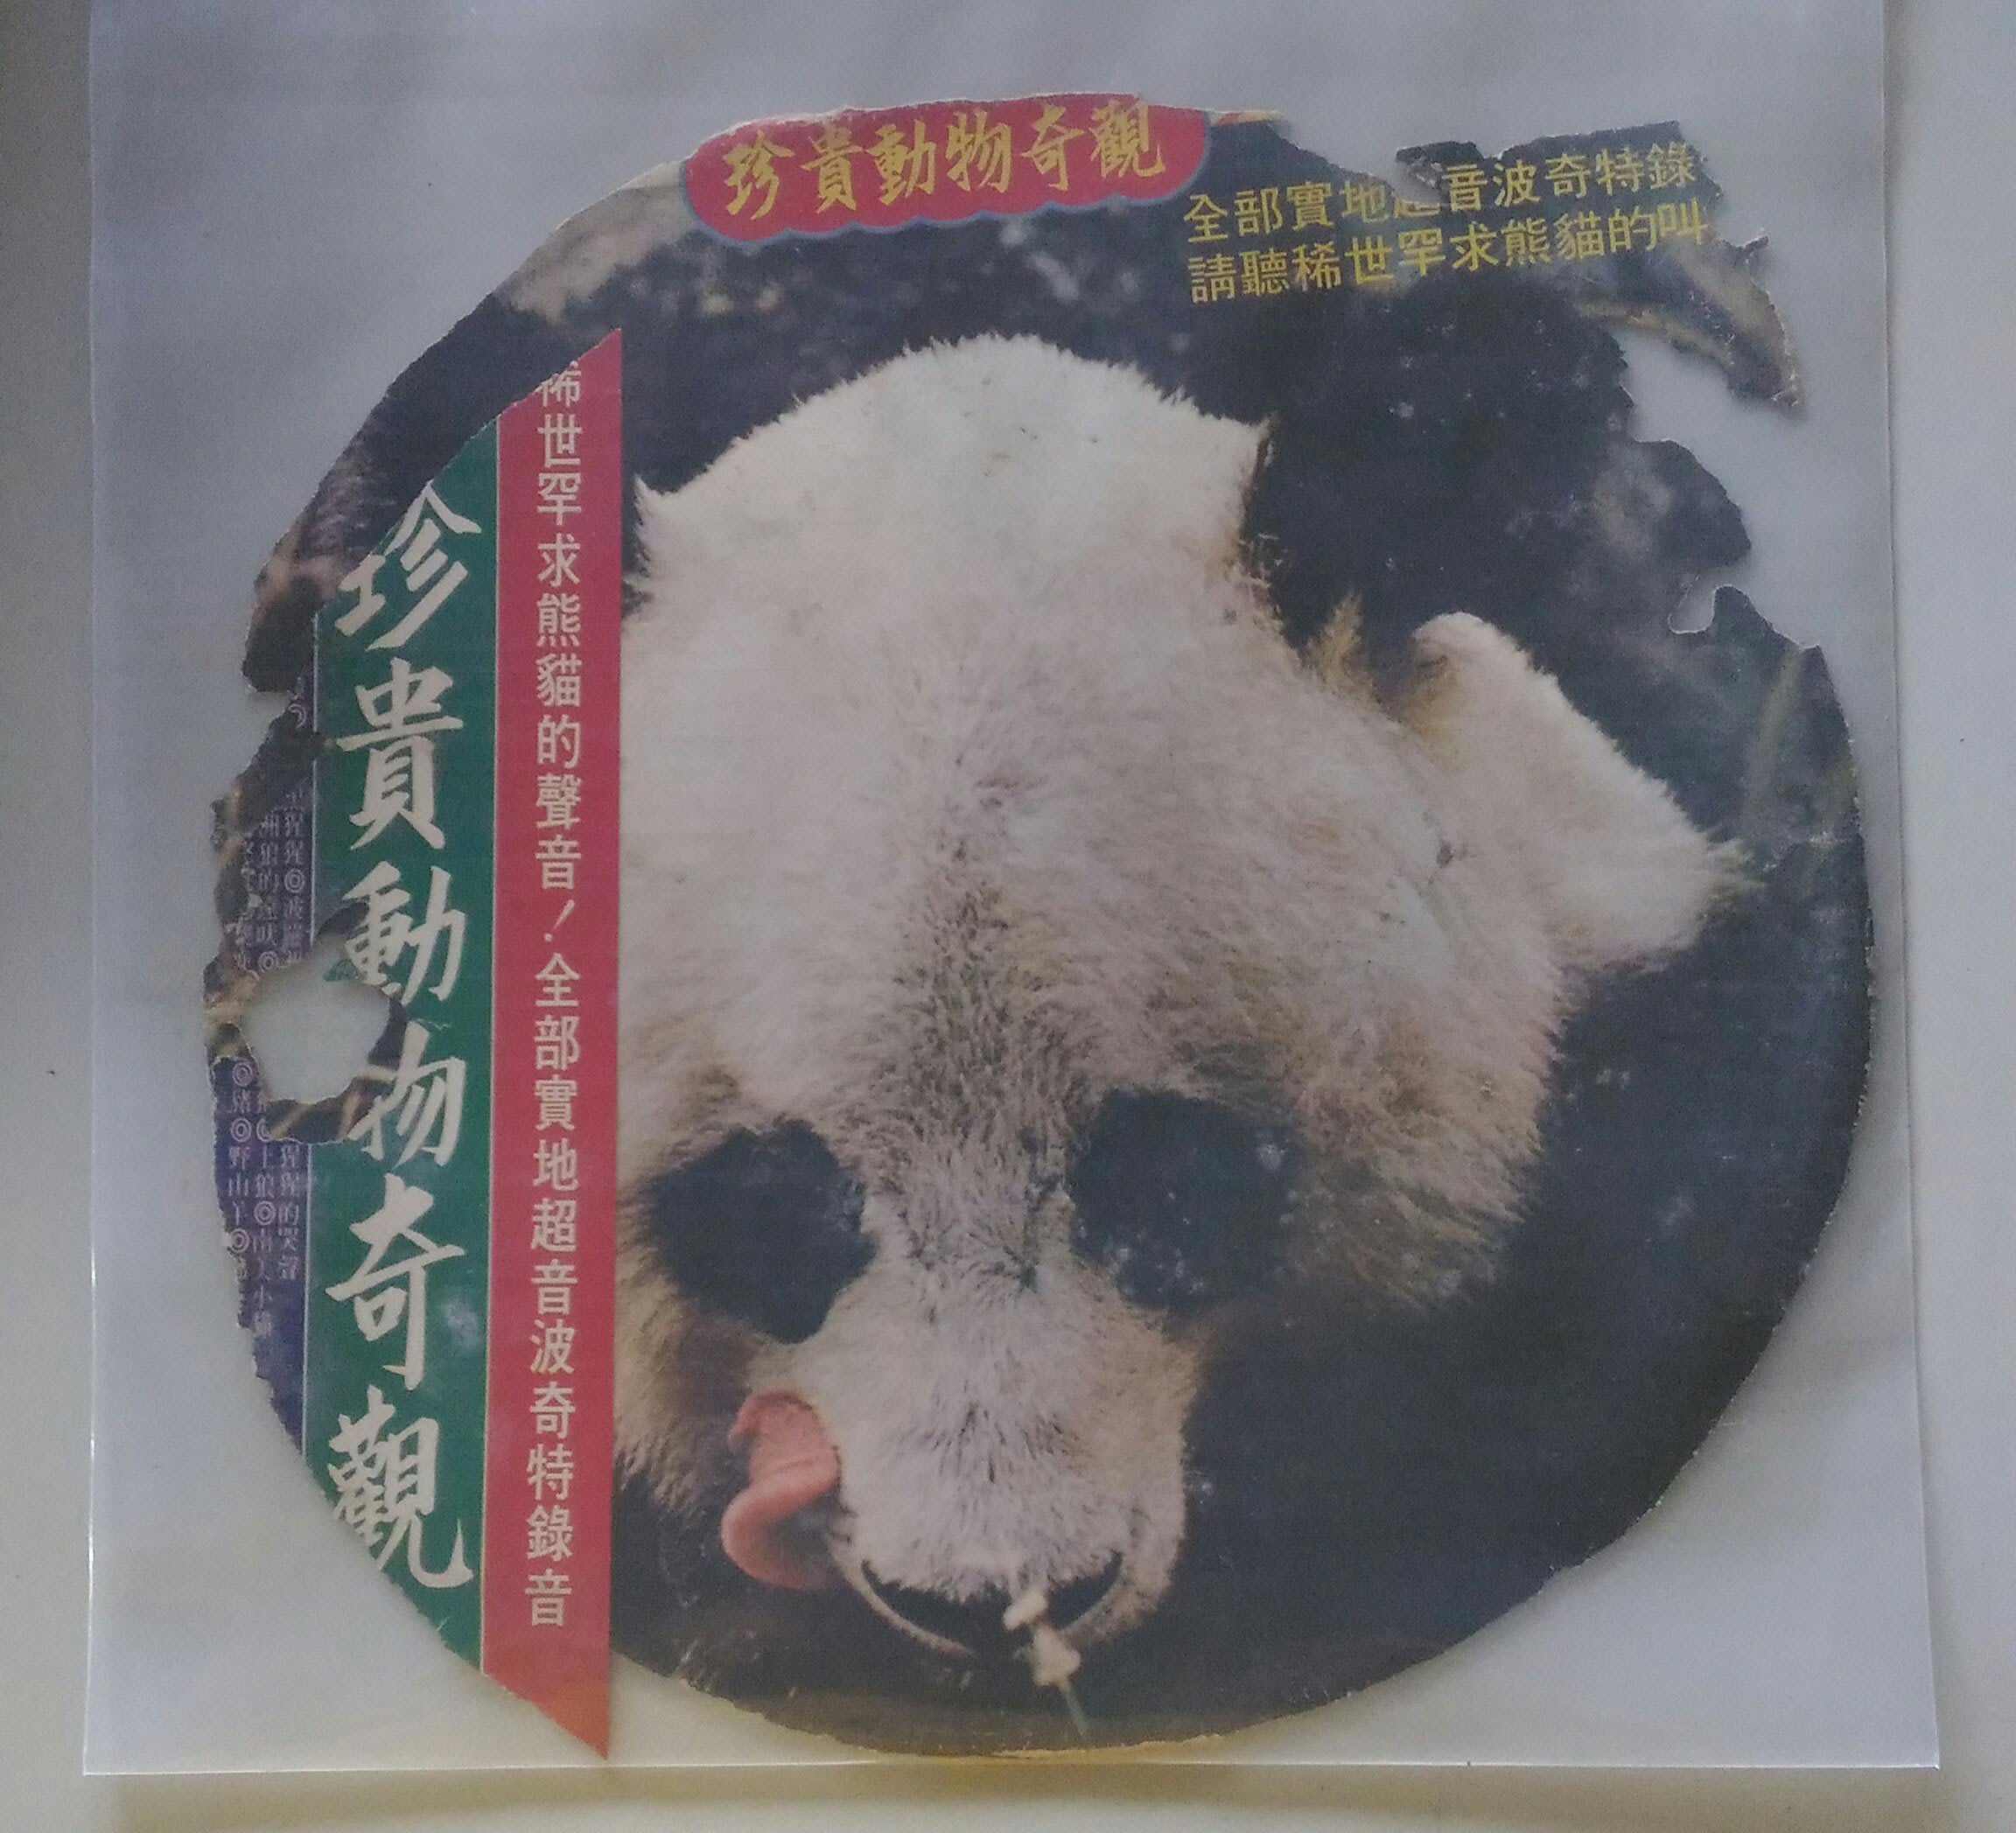 黑潮 黑膠 珍貴動物奇觀 全部實地超音波奇特錄音 民國66年8月出版 Yahoo奇摩拍賣